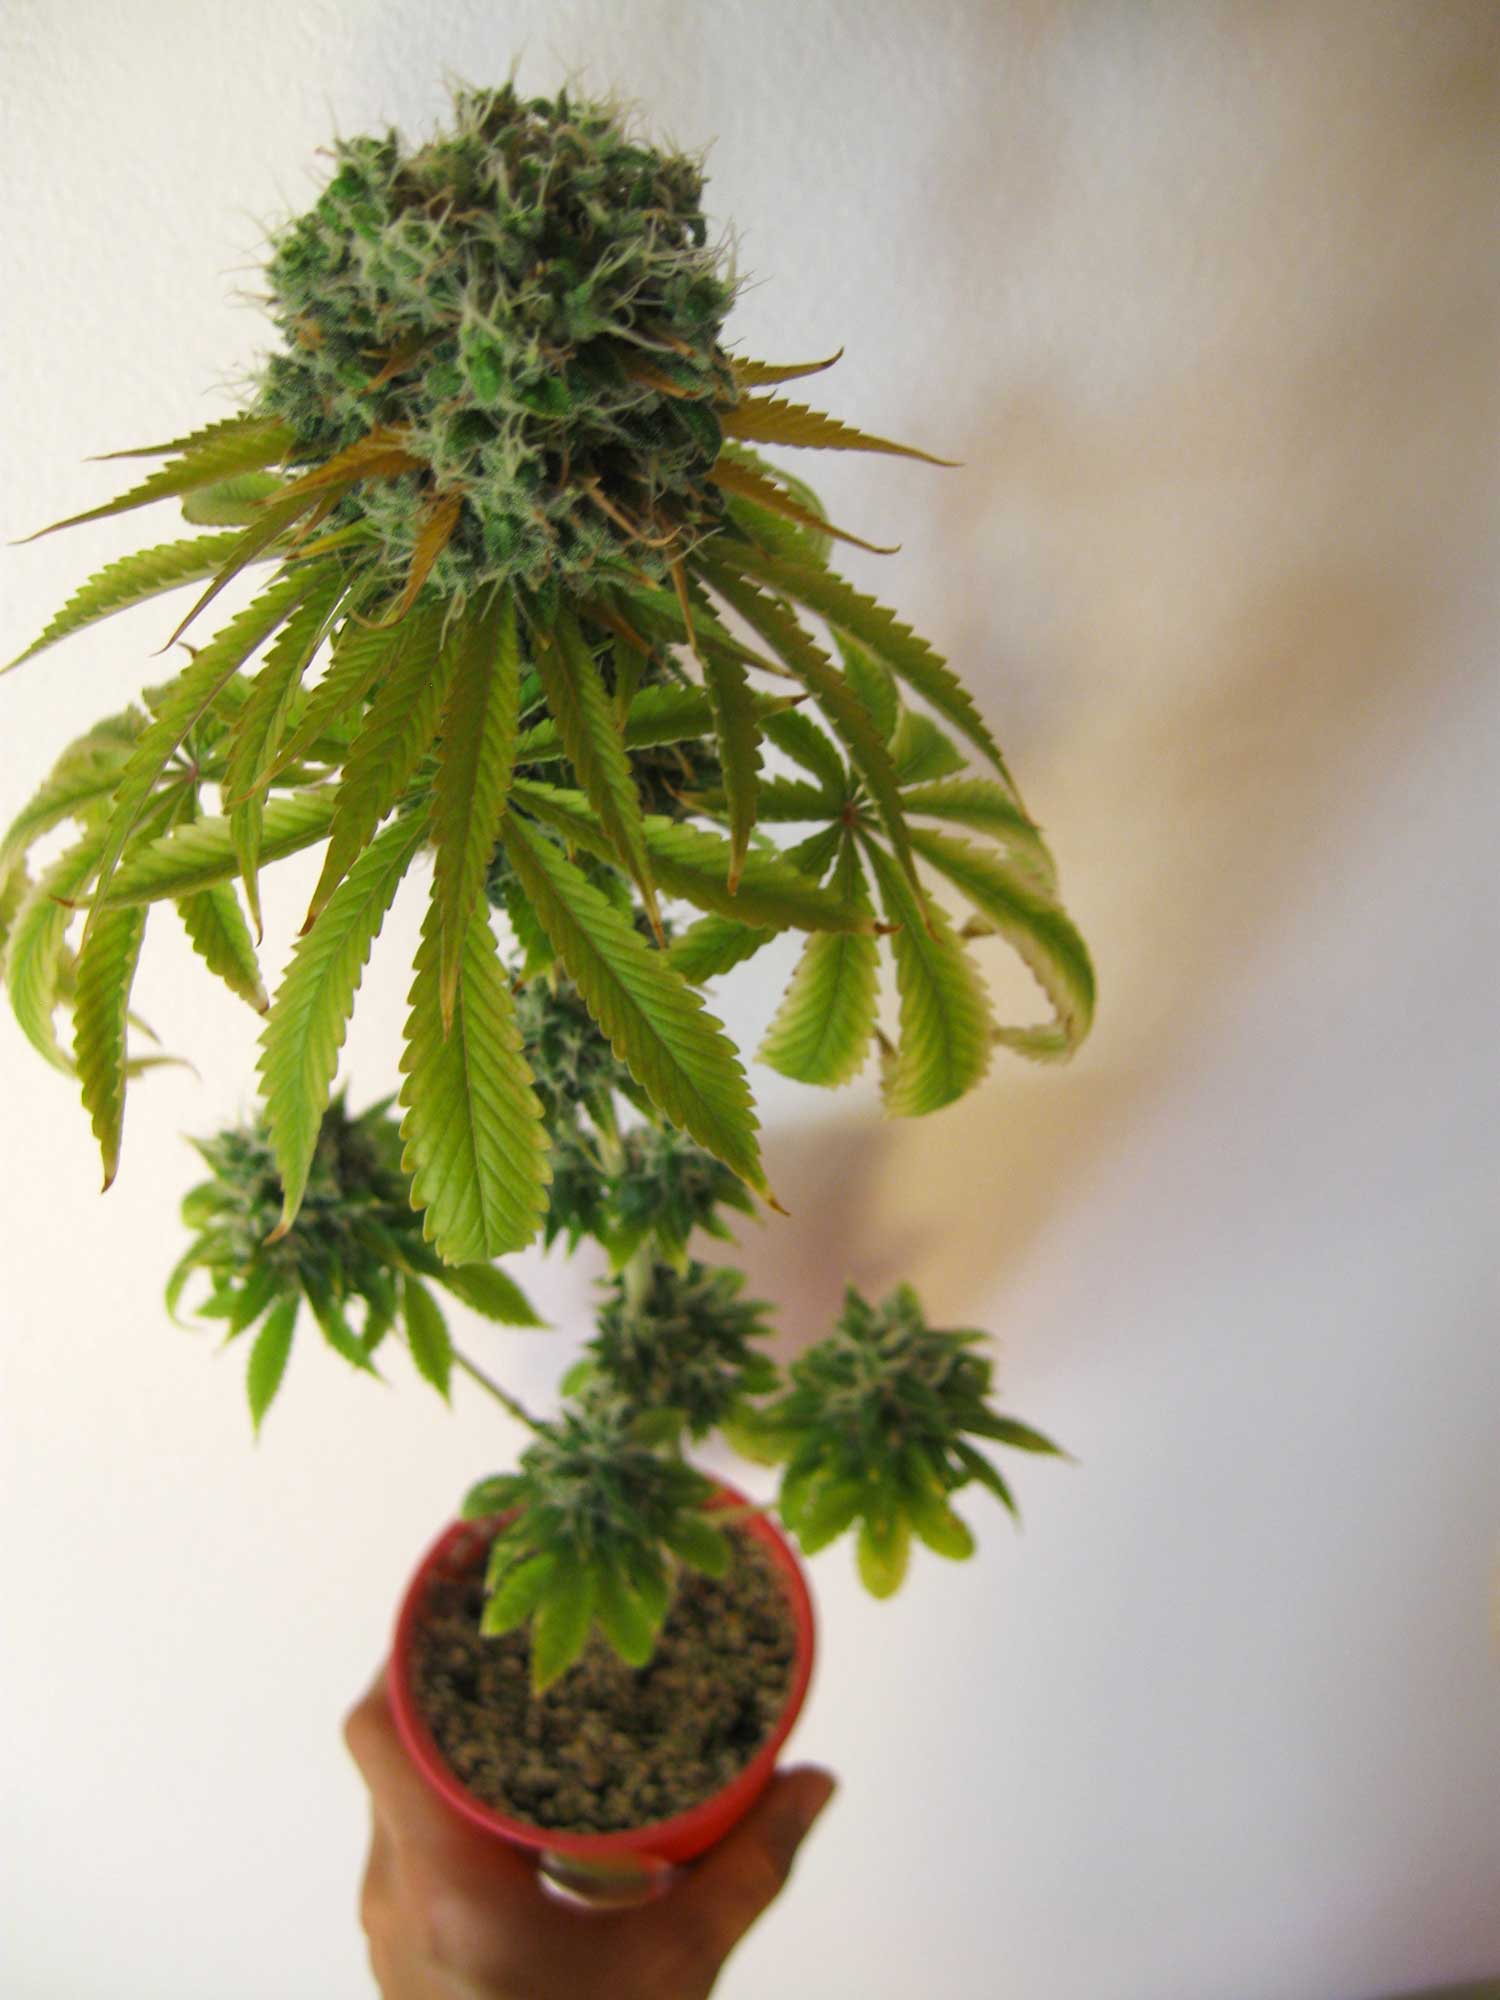 Комнатное растение конопля как правильно есть марихуану